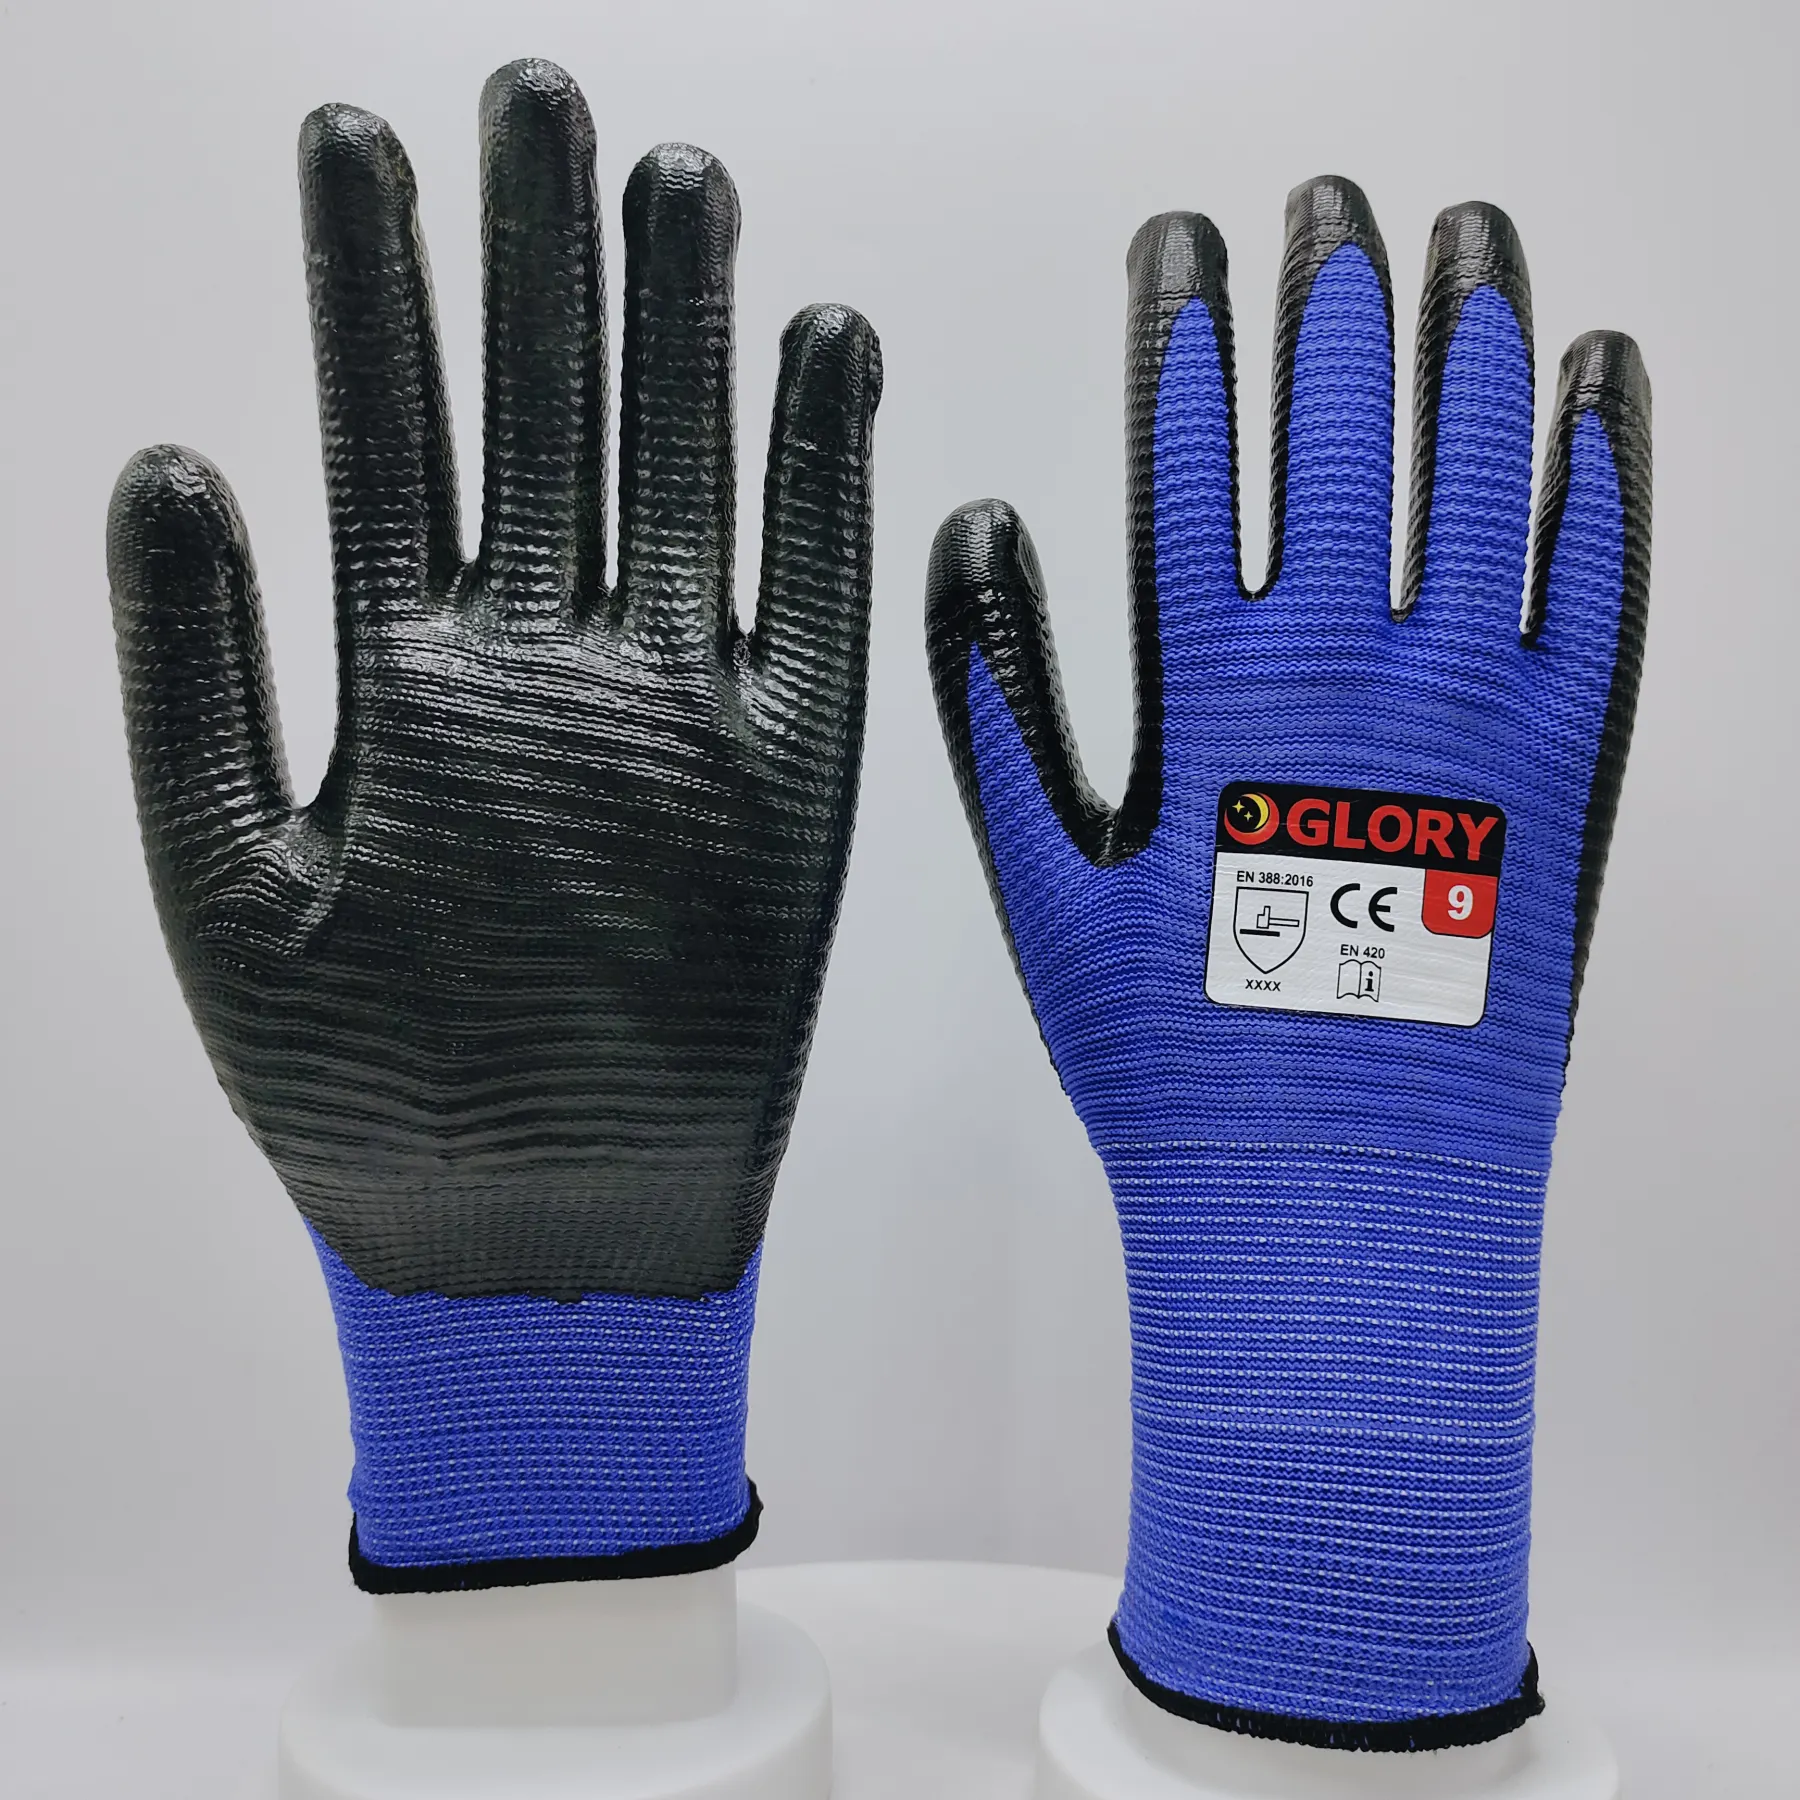 U3 zebra nitril kaplı çalışma eldivenleri ağır iş yağ direnci eldiven için endüstriyel koruyucu eldiven